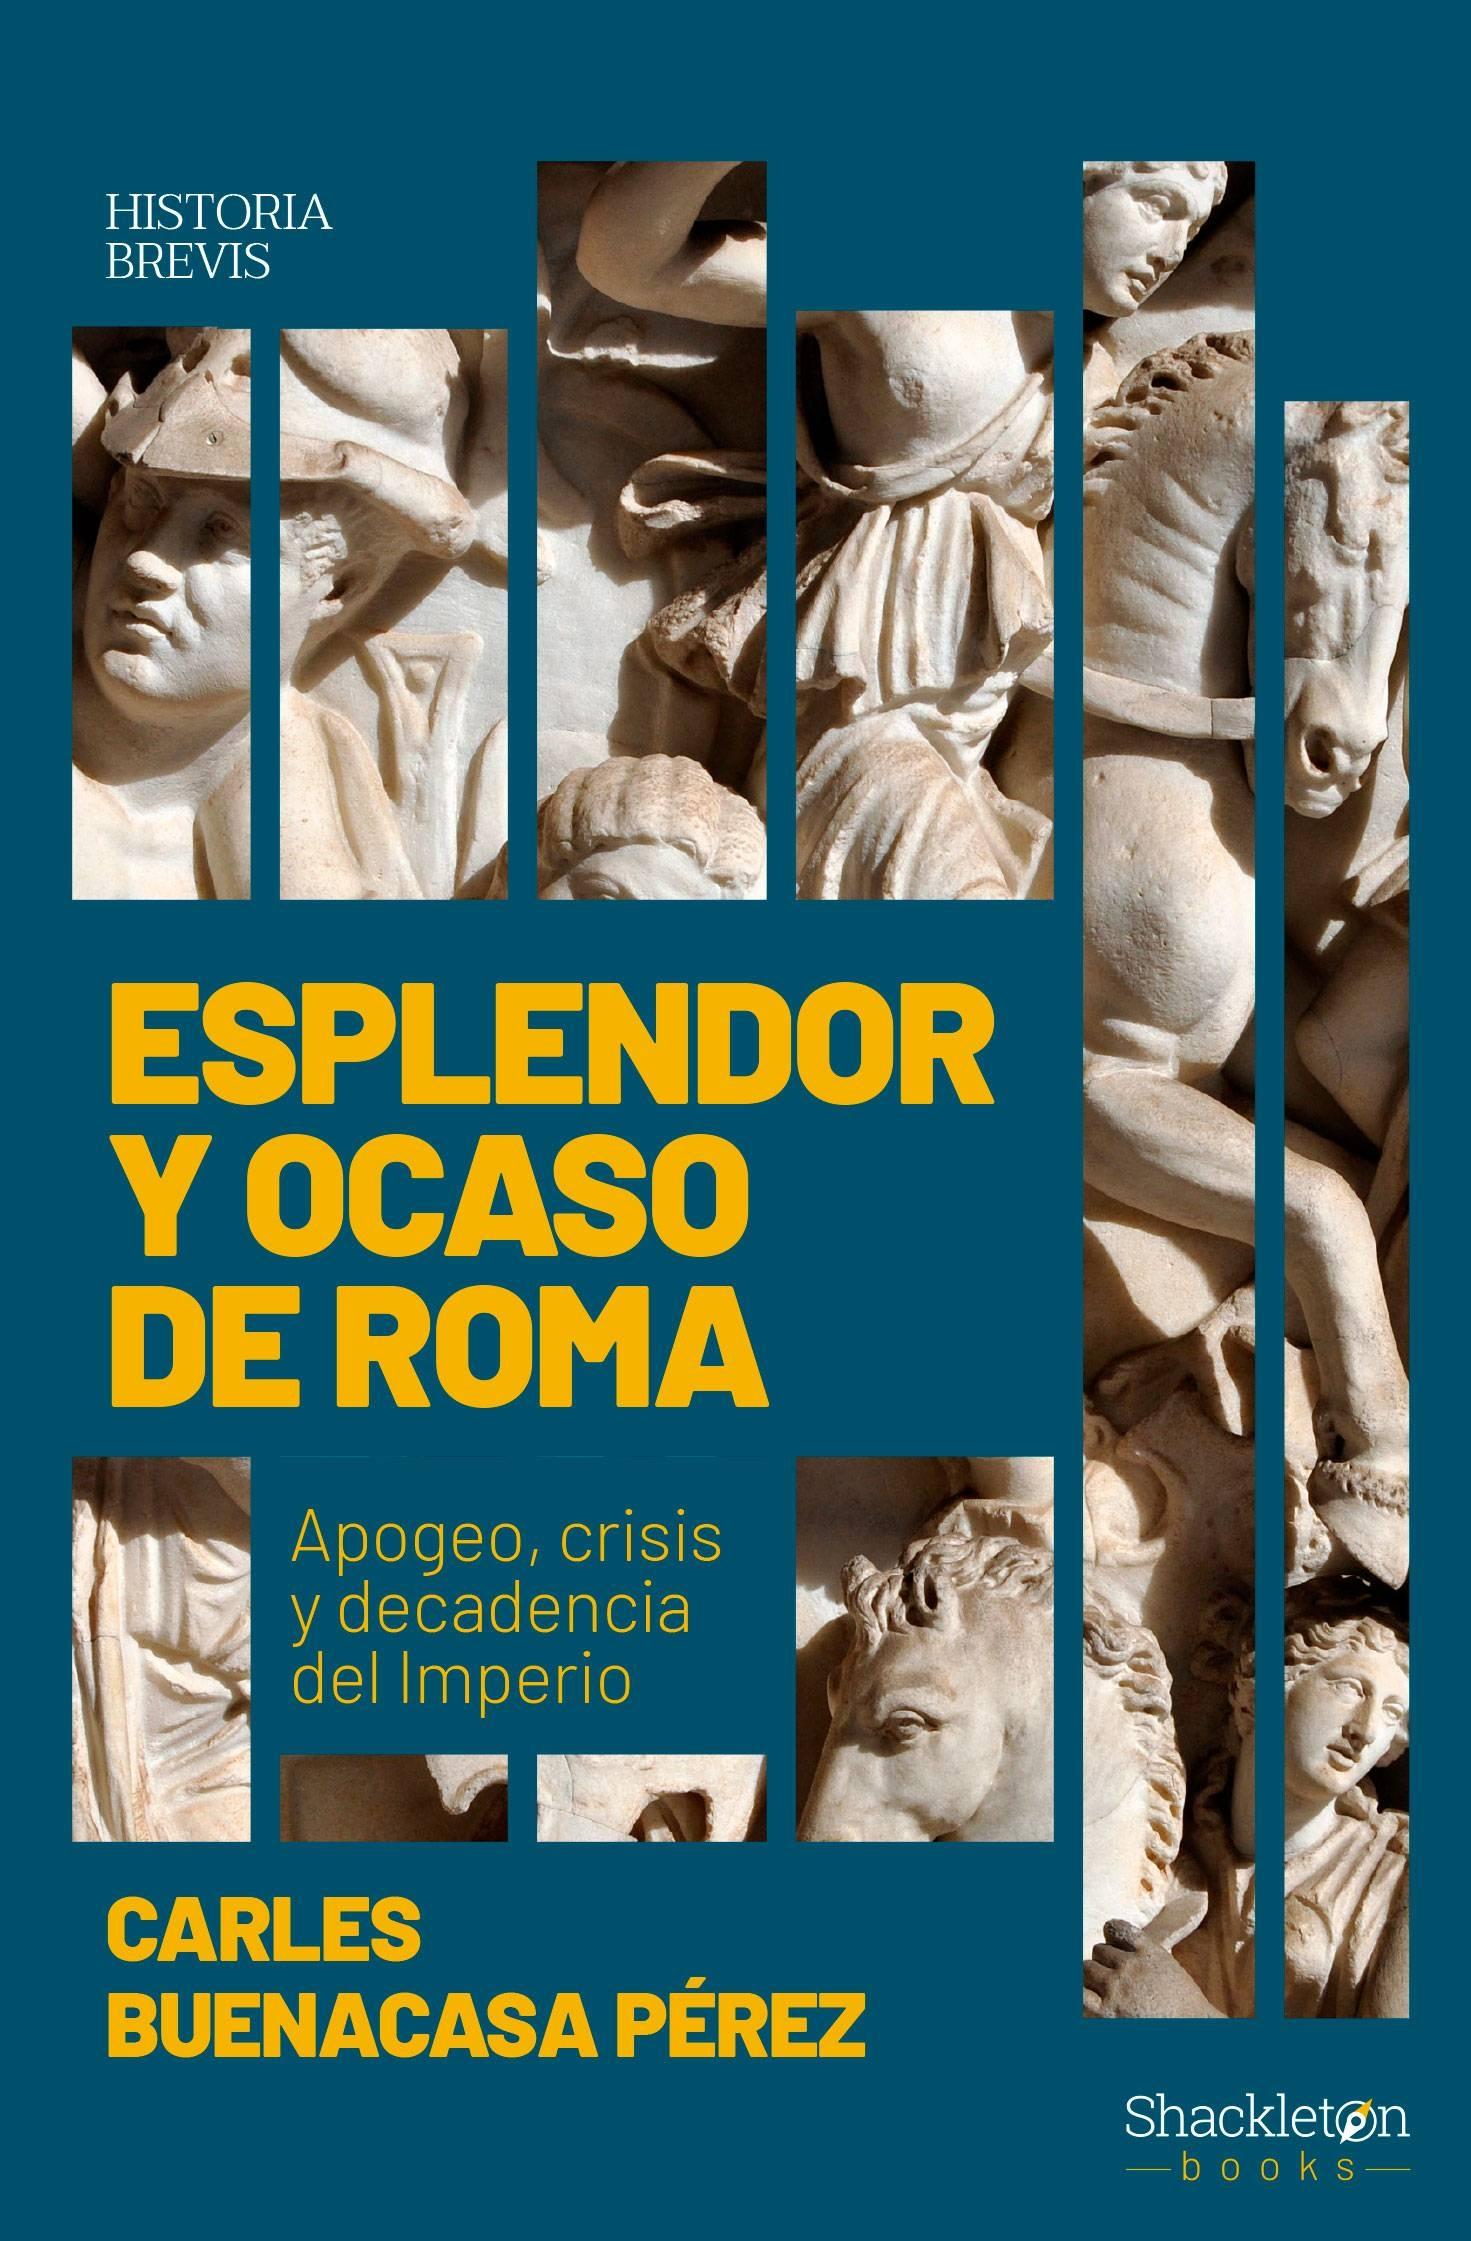 Esplendor y ocaso de Roma "Apogeo, crisis y decadencia del Imperio"